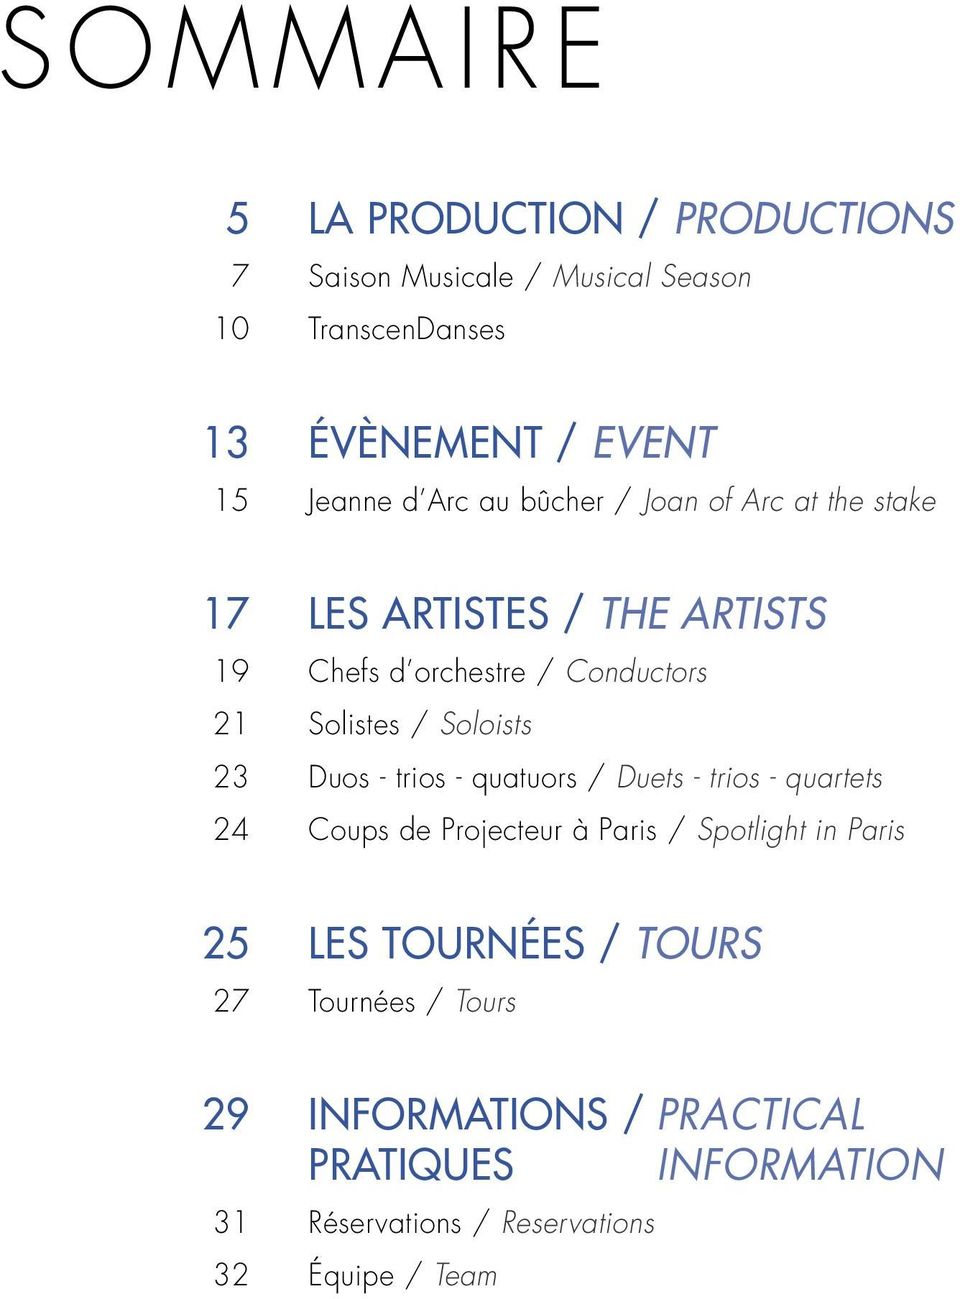 Soloists Duos - trios - quatuors / Duets - trios - quartets Coups de Projecteur à Paris / Spotlight in Paris 25 27 LES